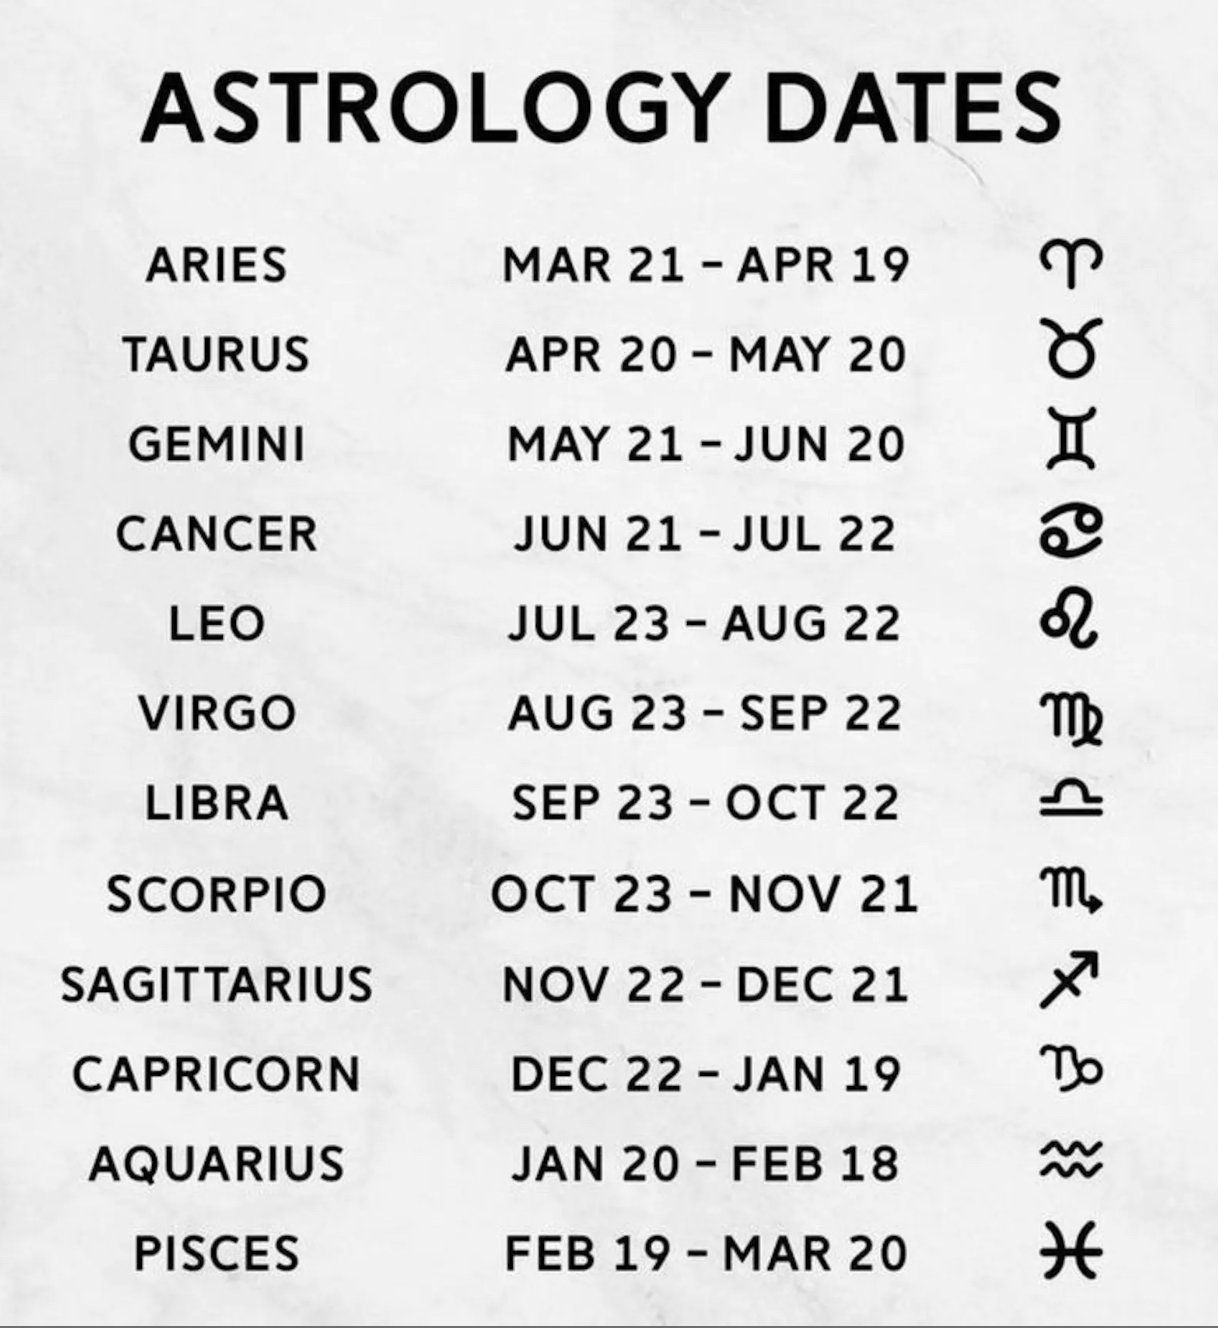 Capricorn Zodiac Star Sign Planter Pot